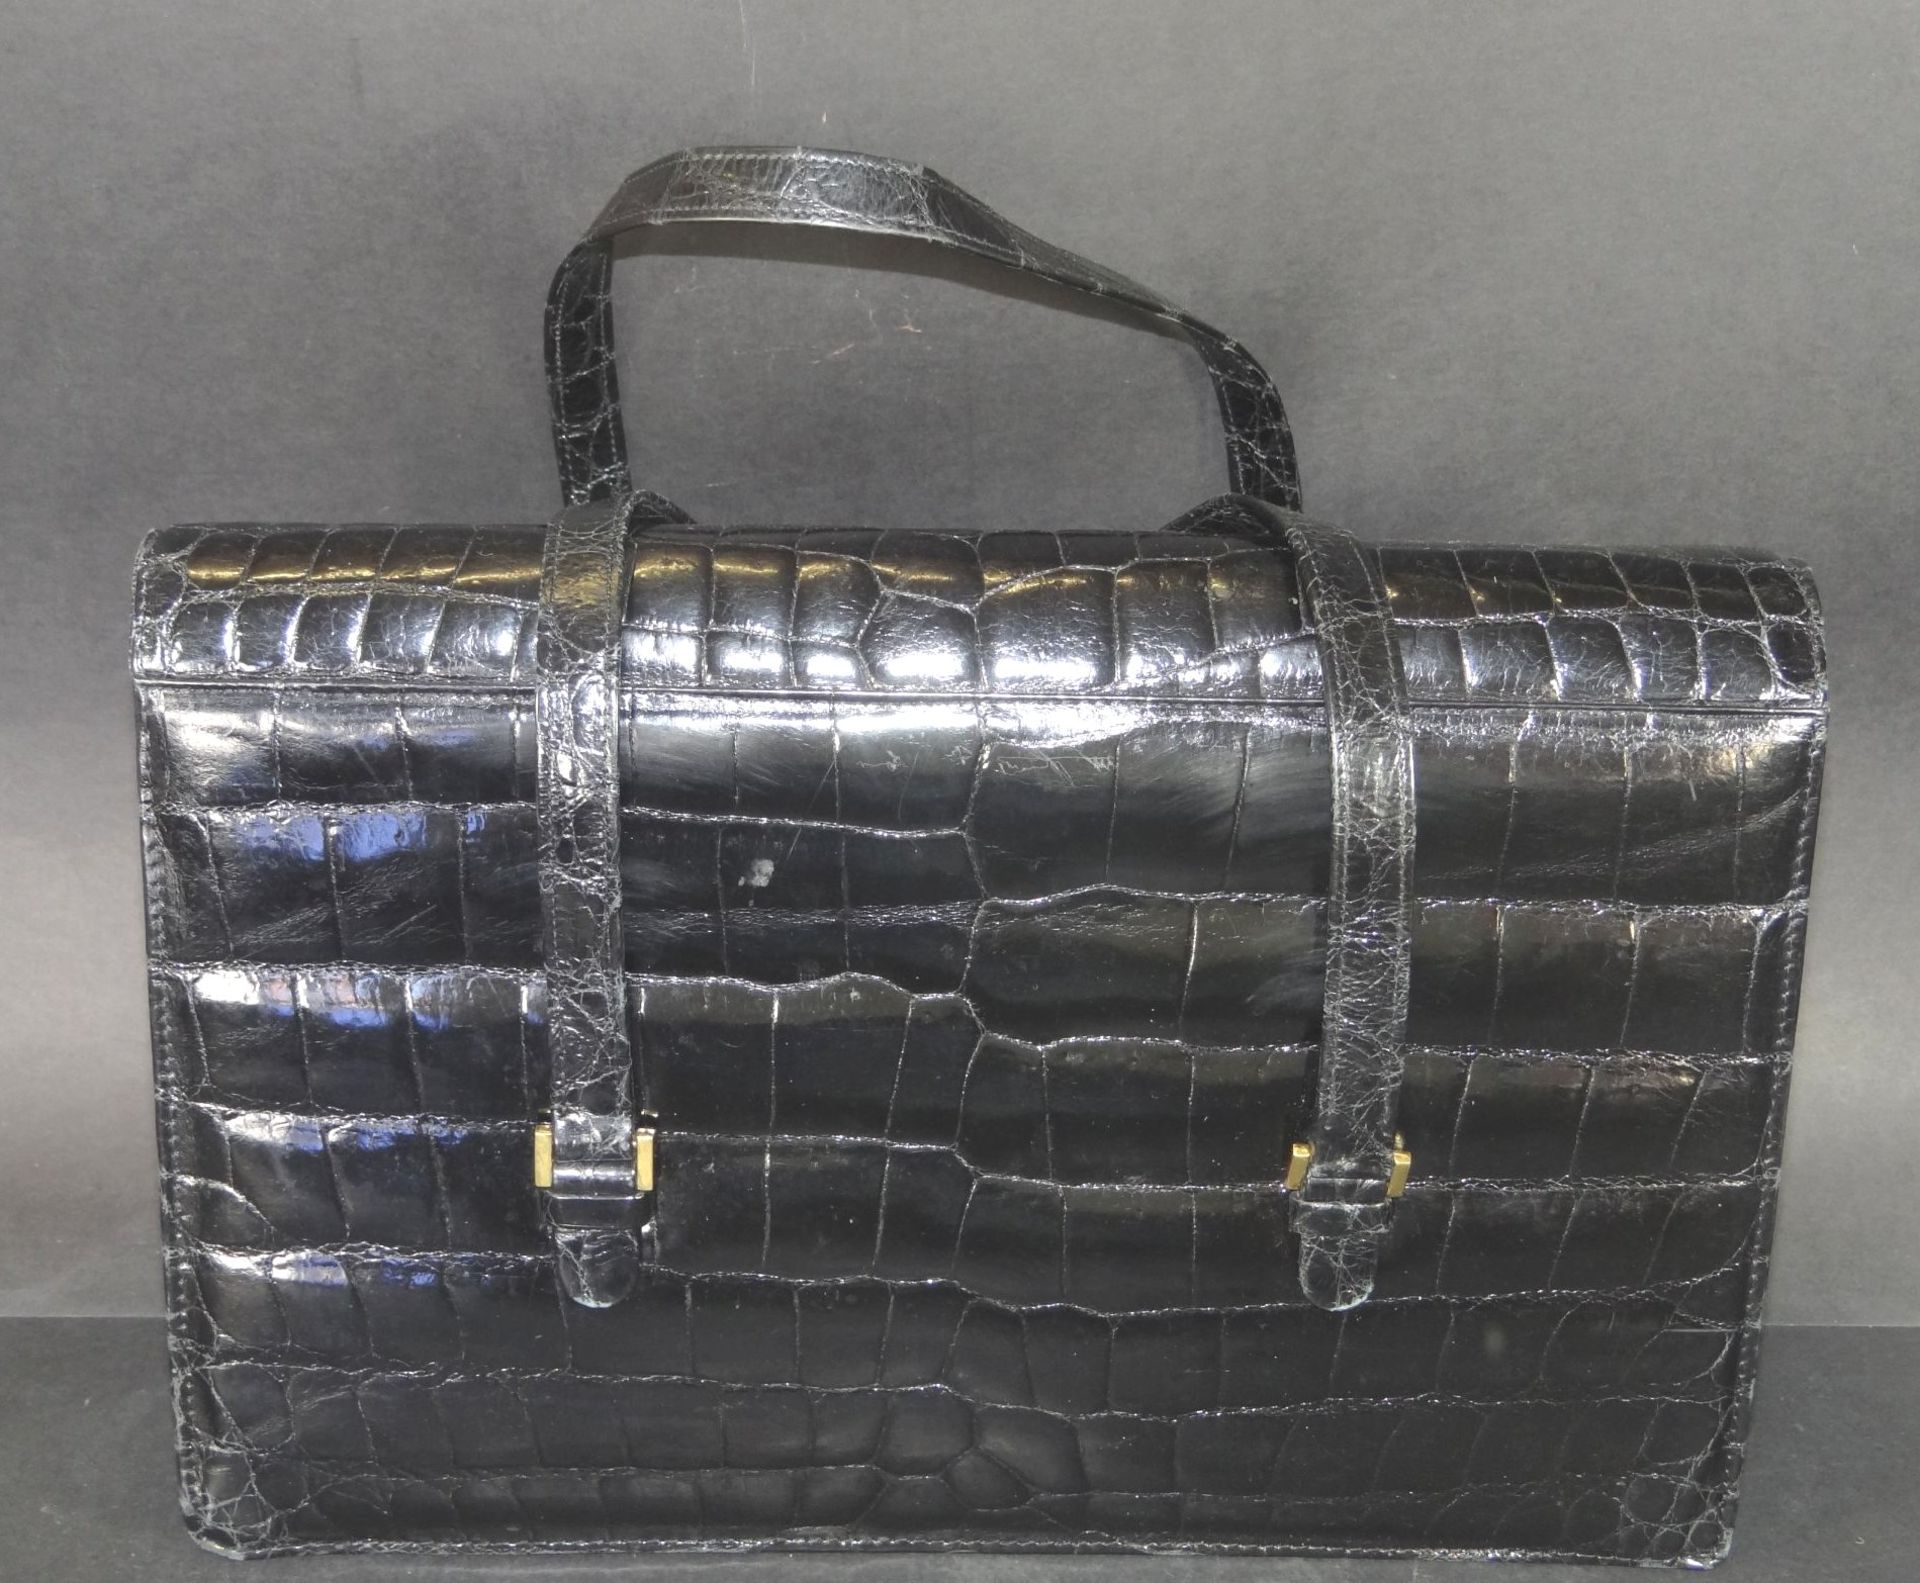 Krokoleder-Handtasche, schwarz, 21x31 cm - Bild 2 aus 4